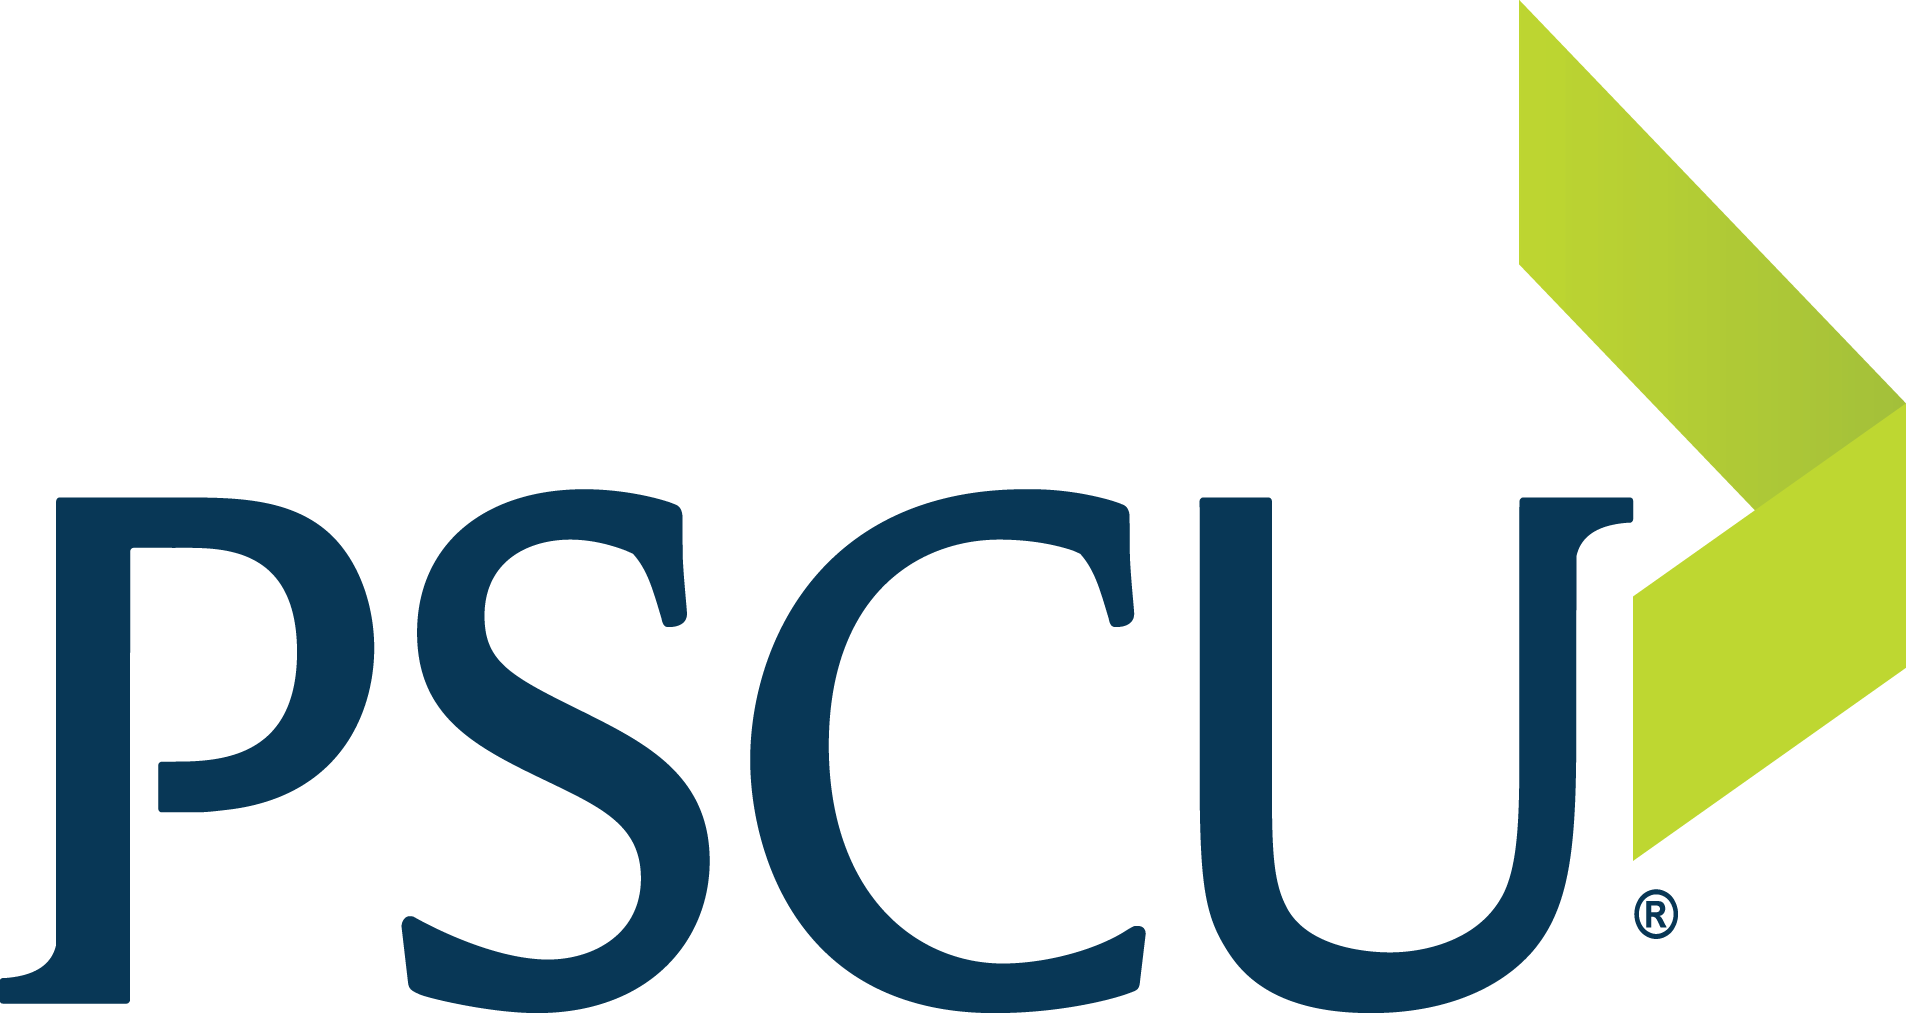 pscu logo